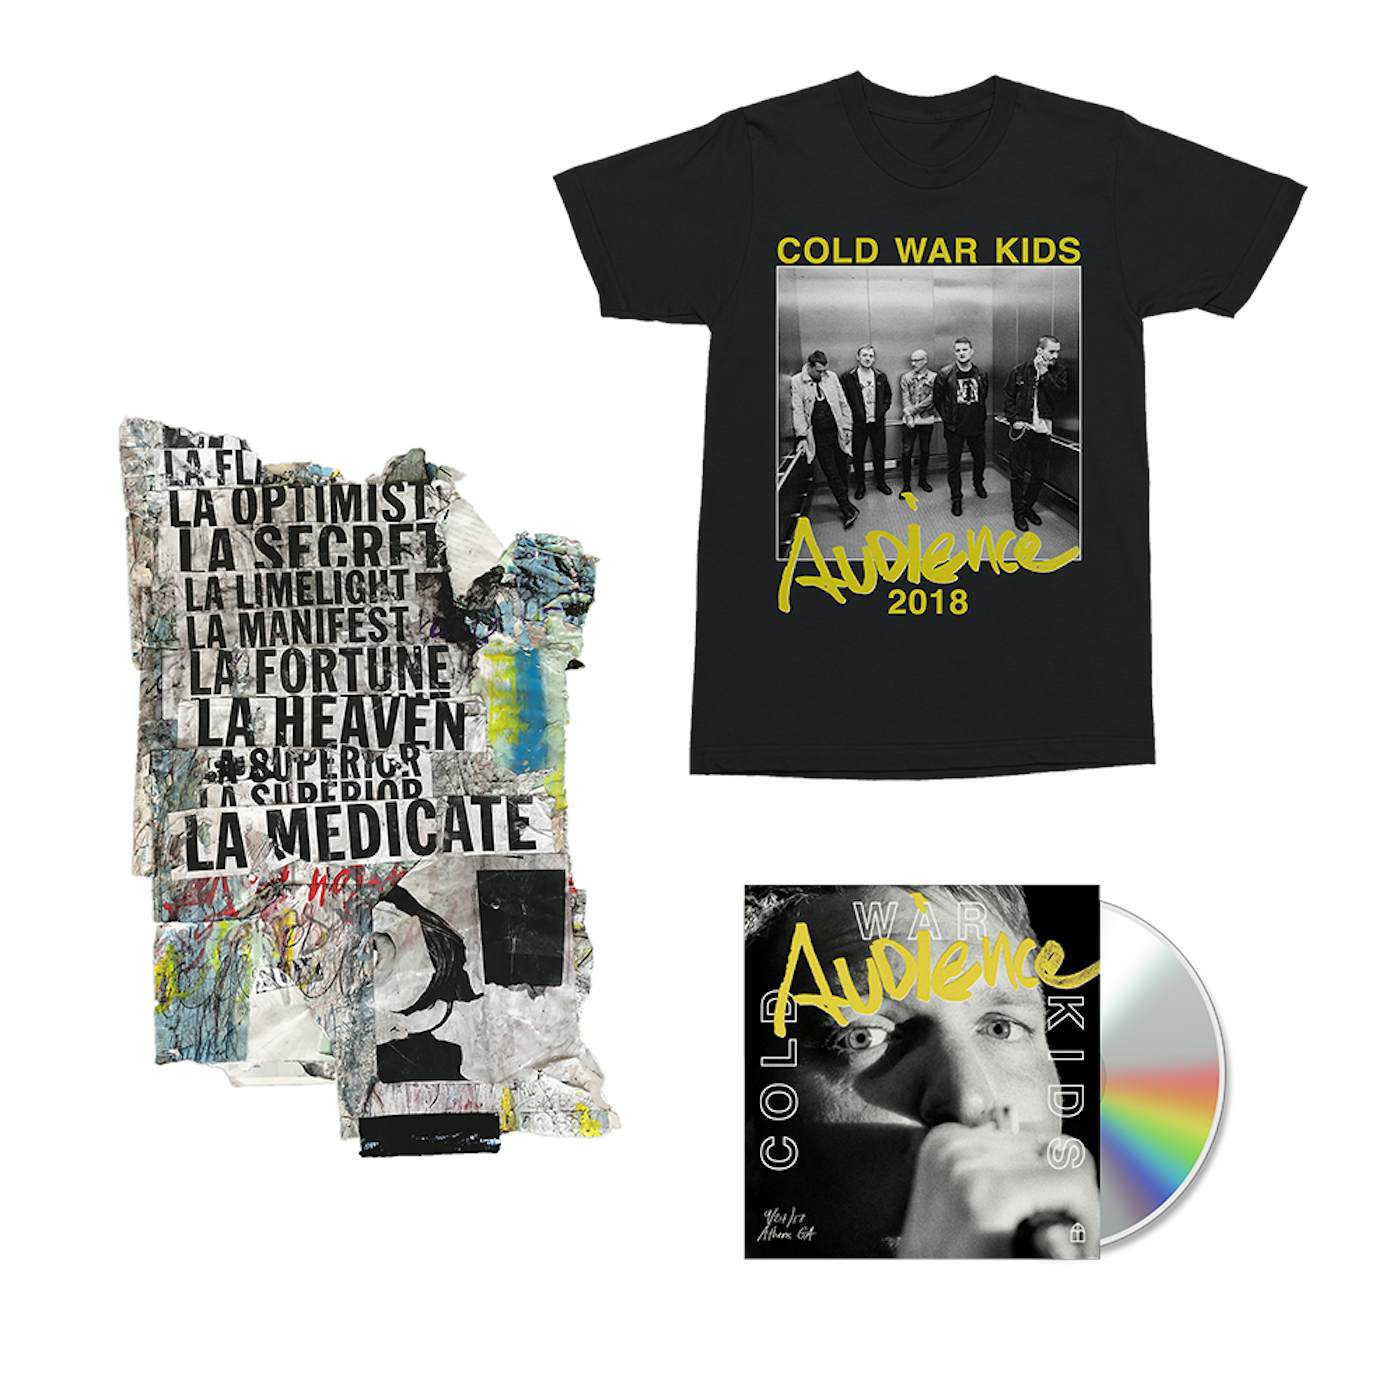 Cold War Kids Audience CD + Digital Album + T-Shirt + Signed Art Piece